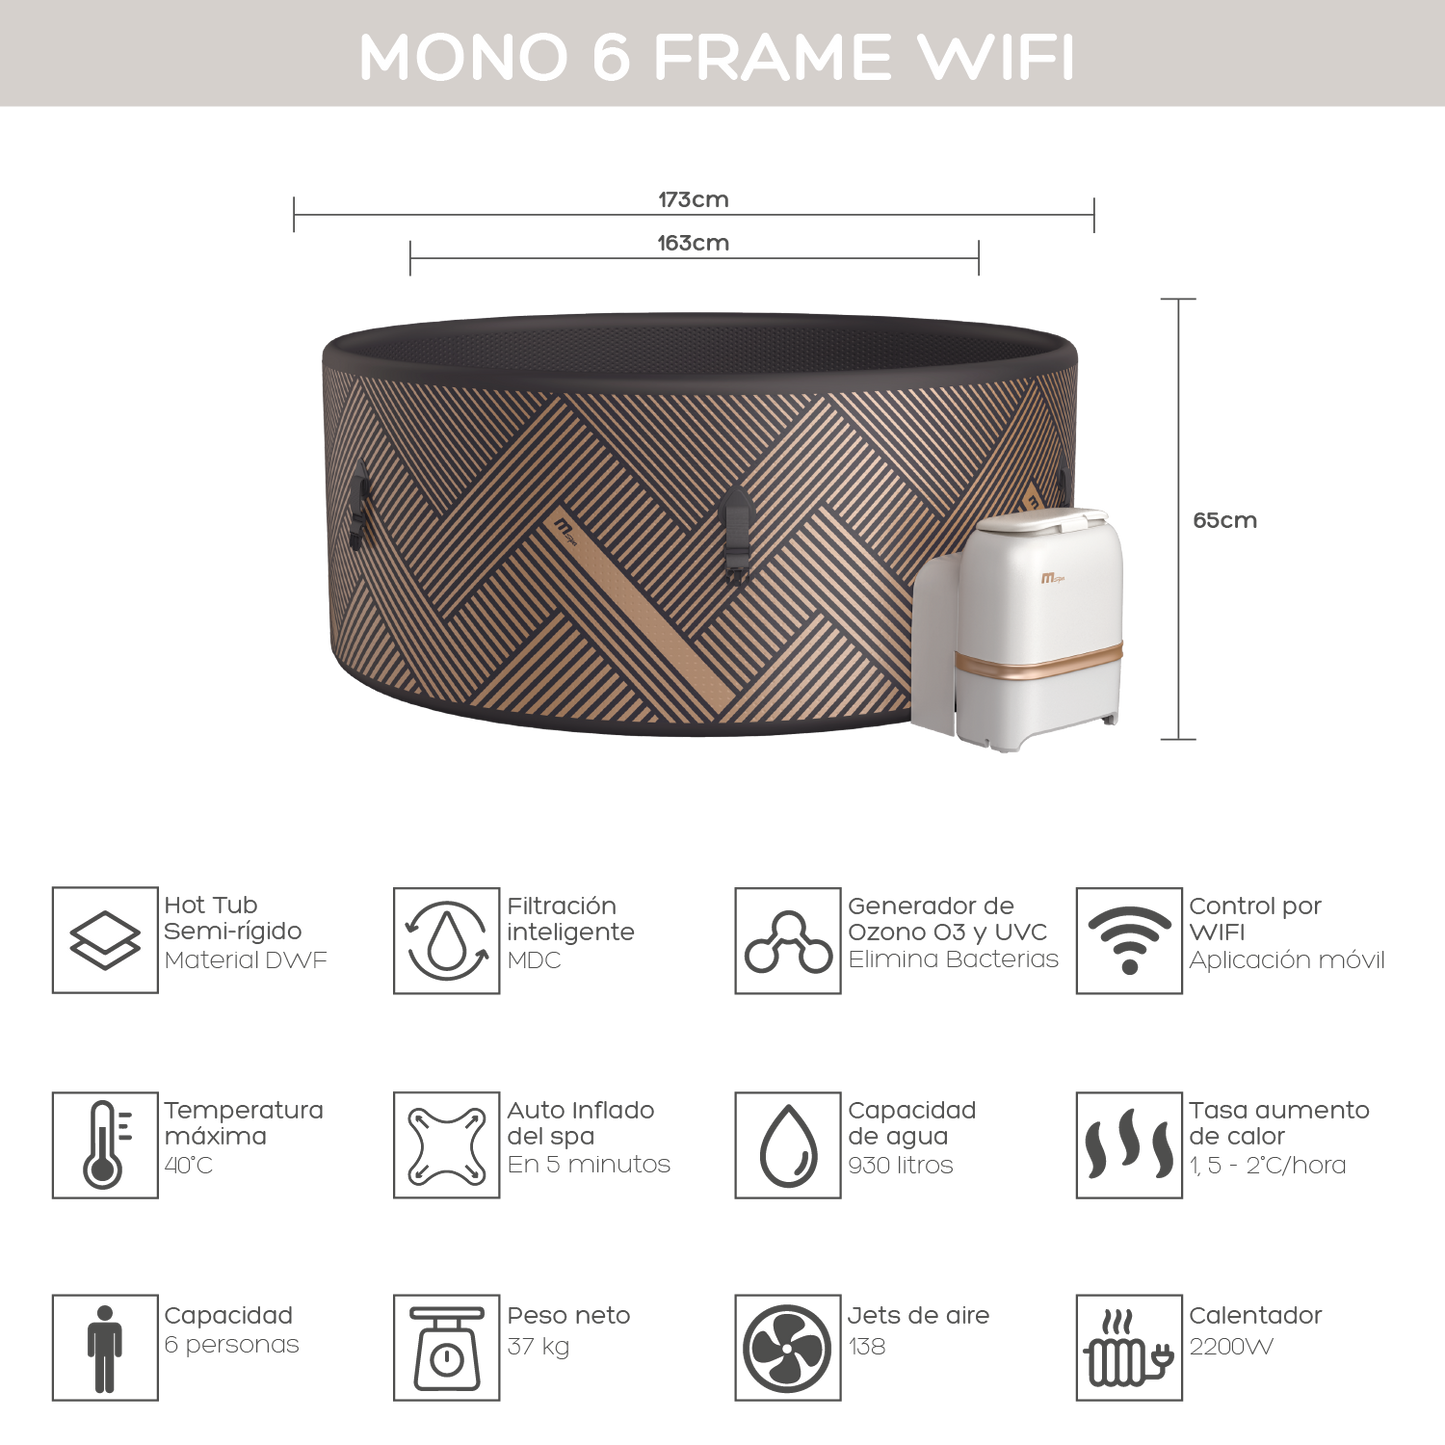 Hot Tub Mono 6 Frame Wifi